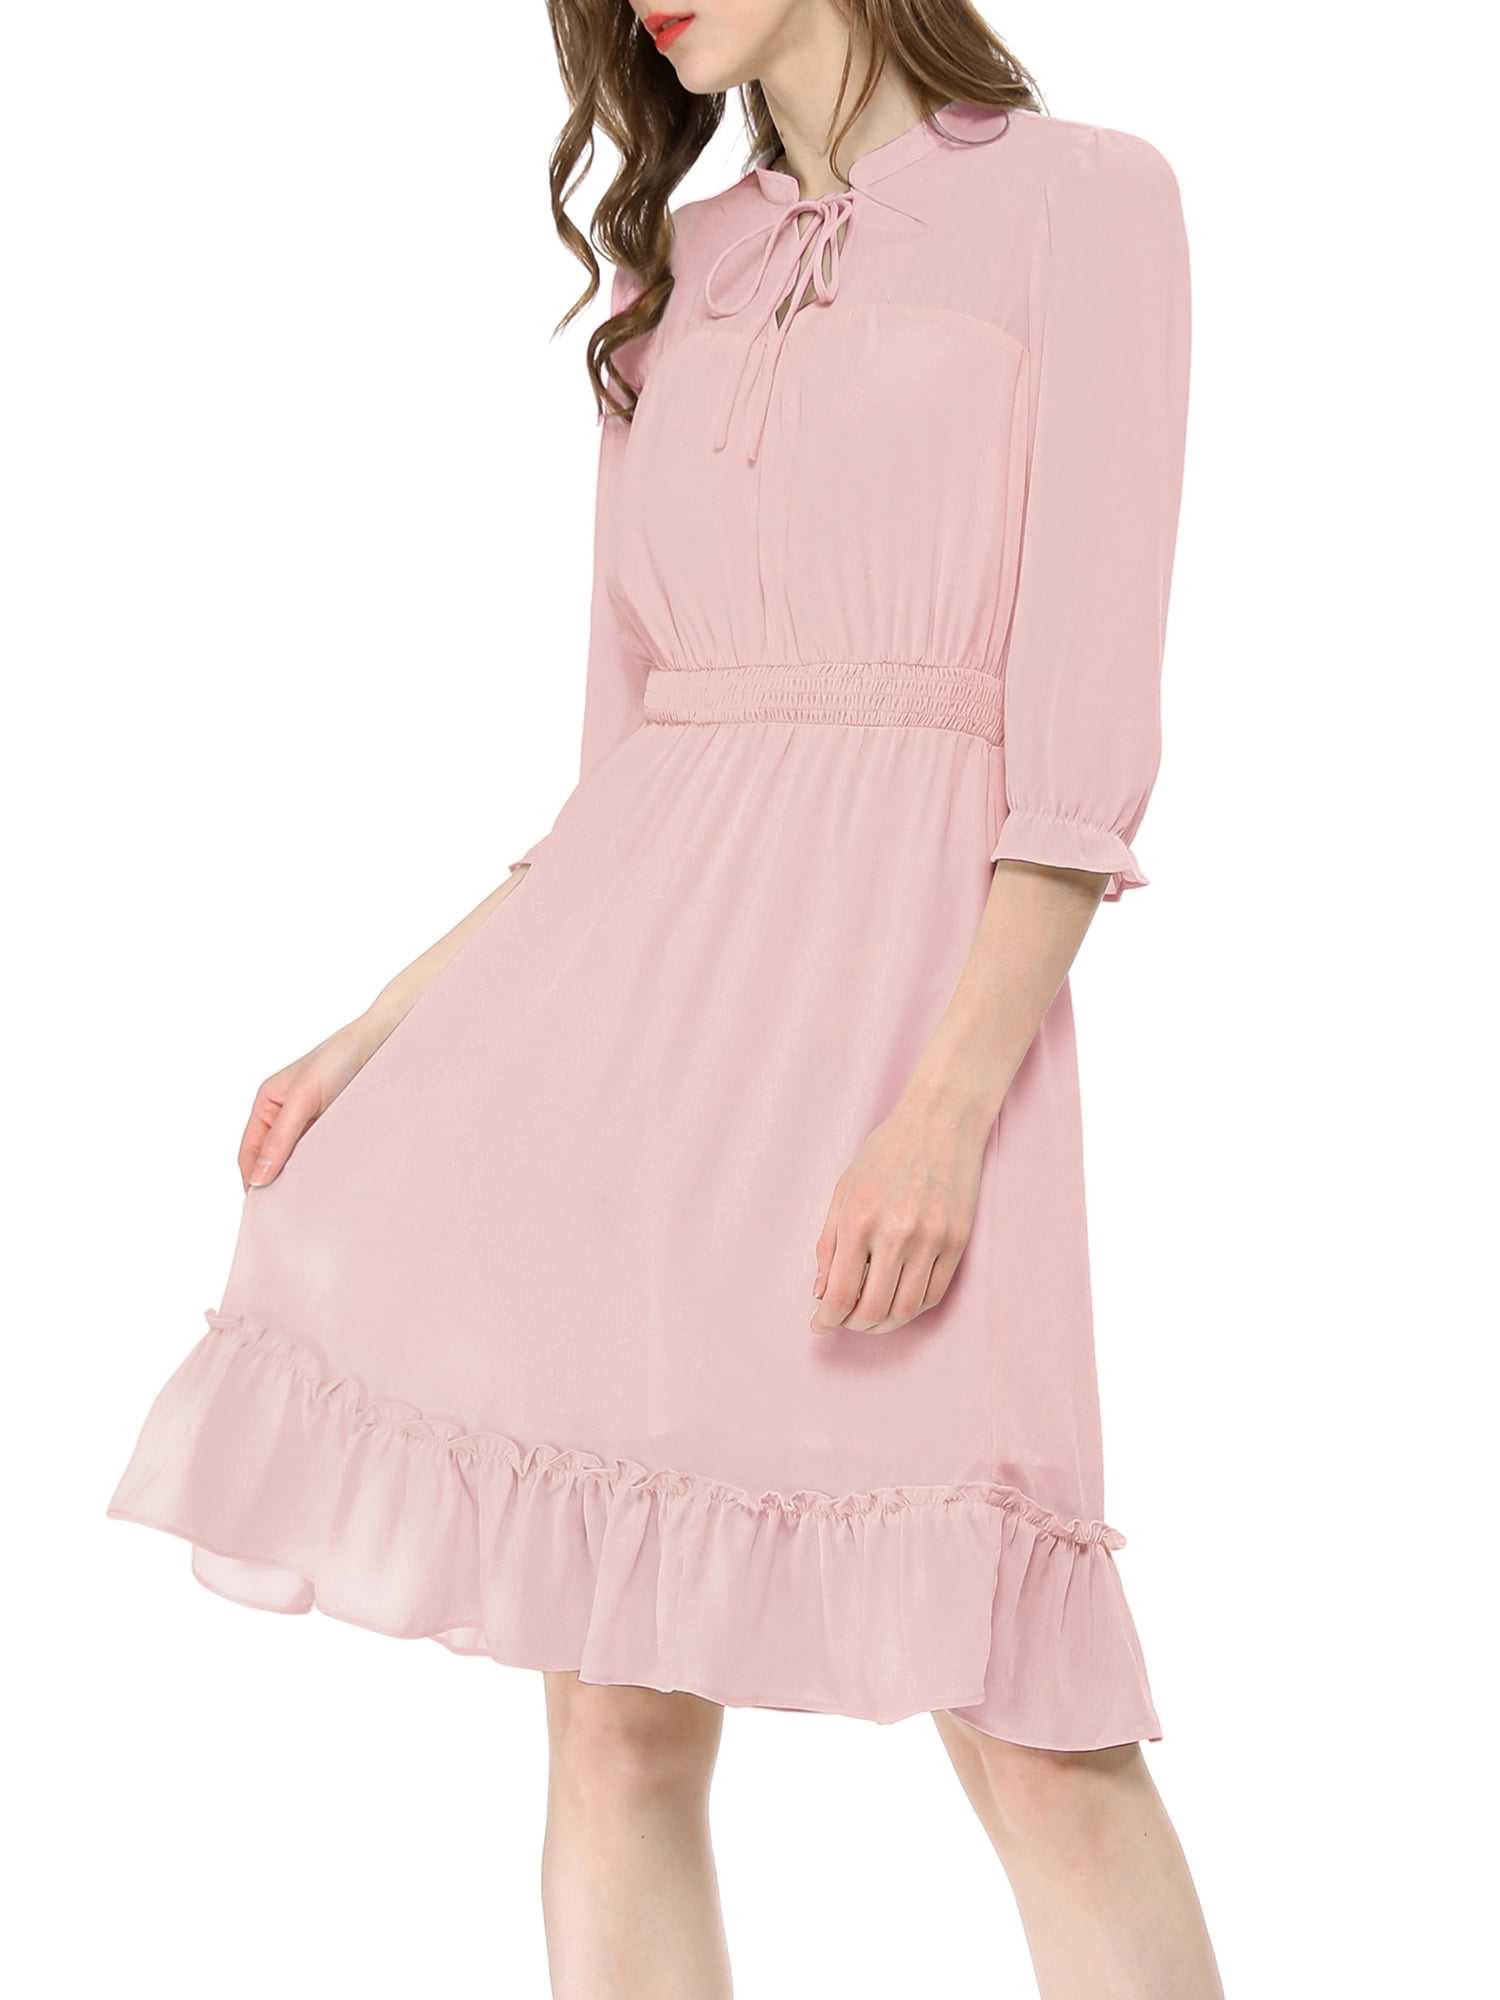 Allegra K Allegra K Womens Ruffle Hem 34 Sleeve A Line Smocked Short Dress Xl Pink Walmart 